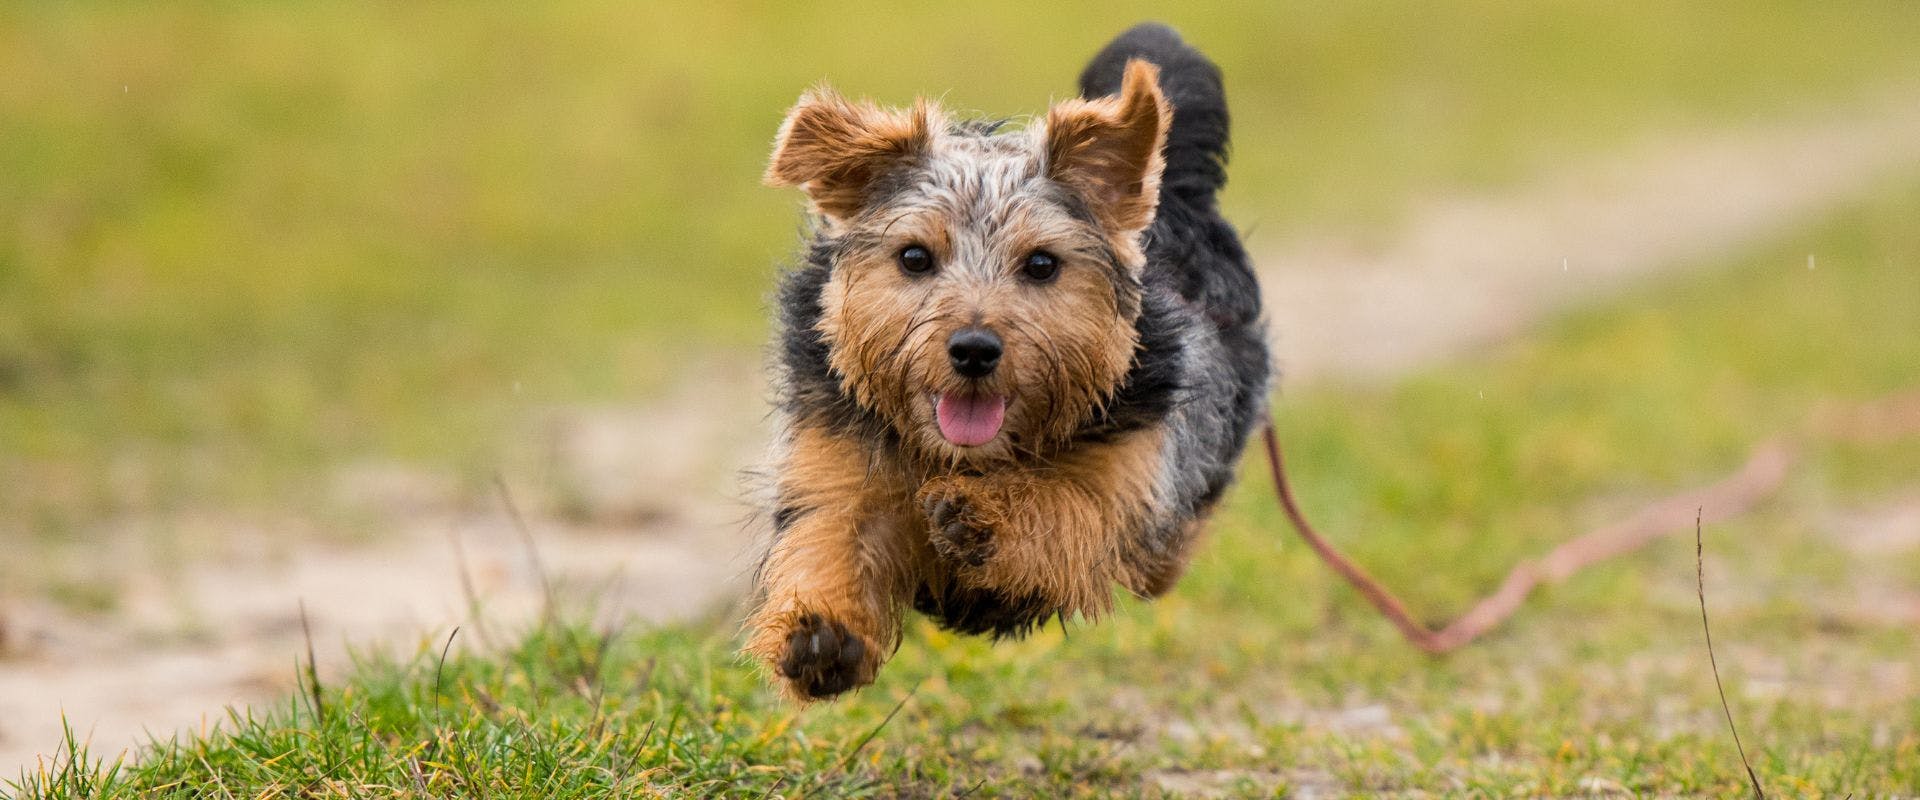 Norfolk Terrier running outdoors